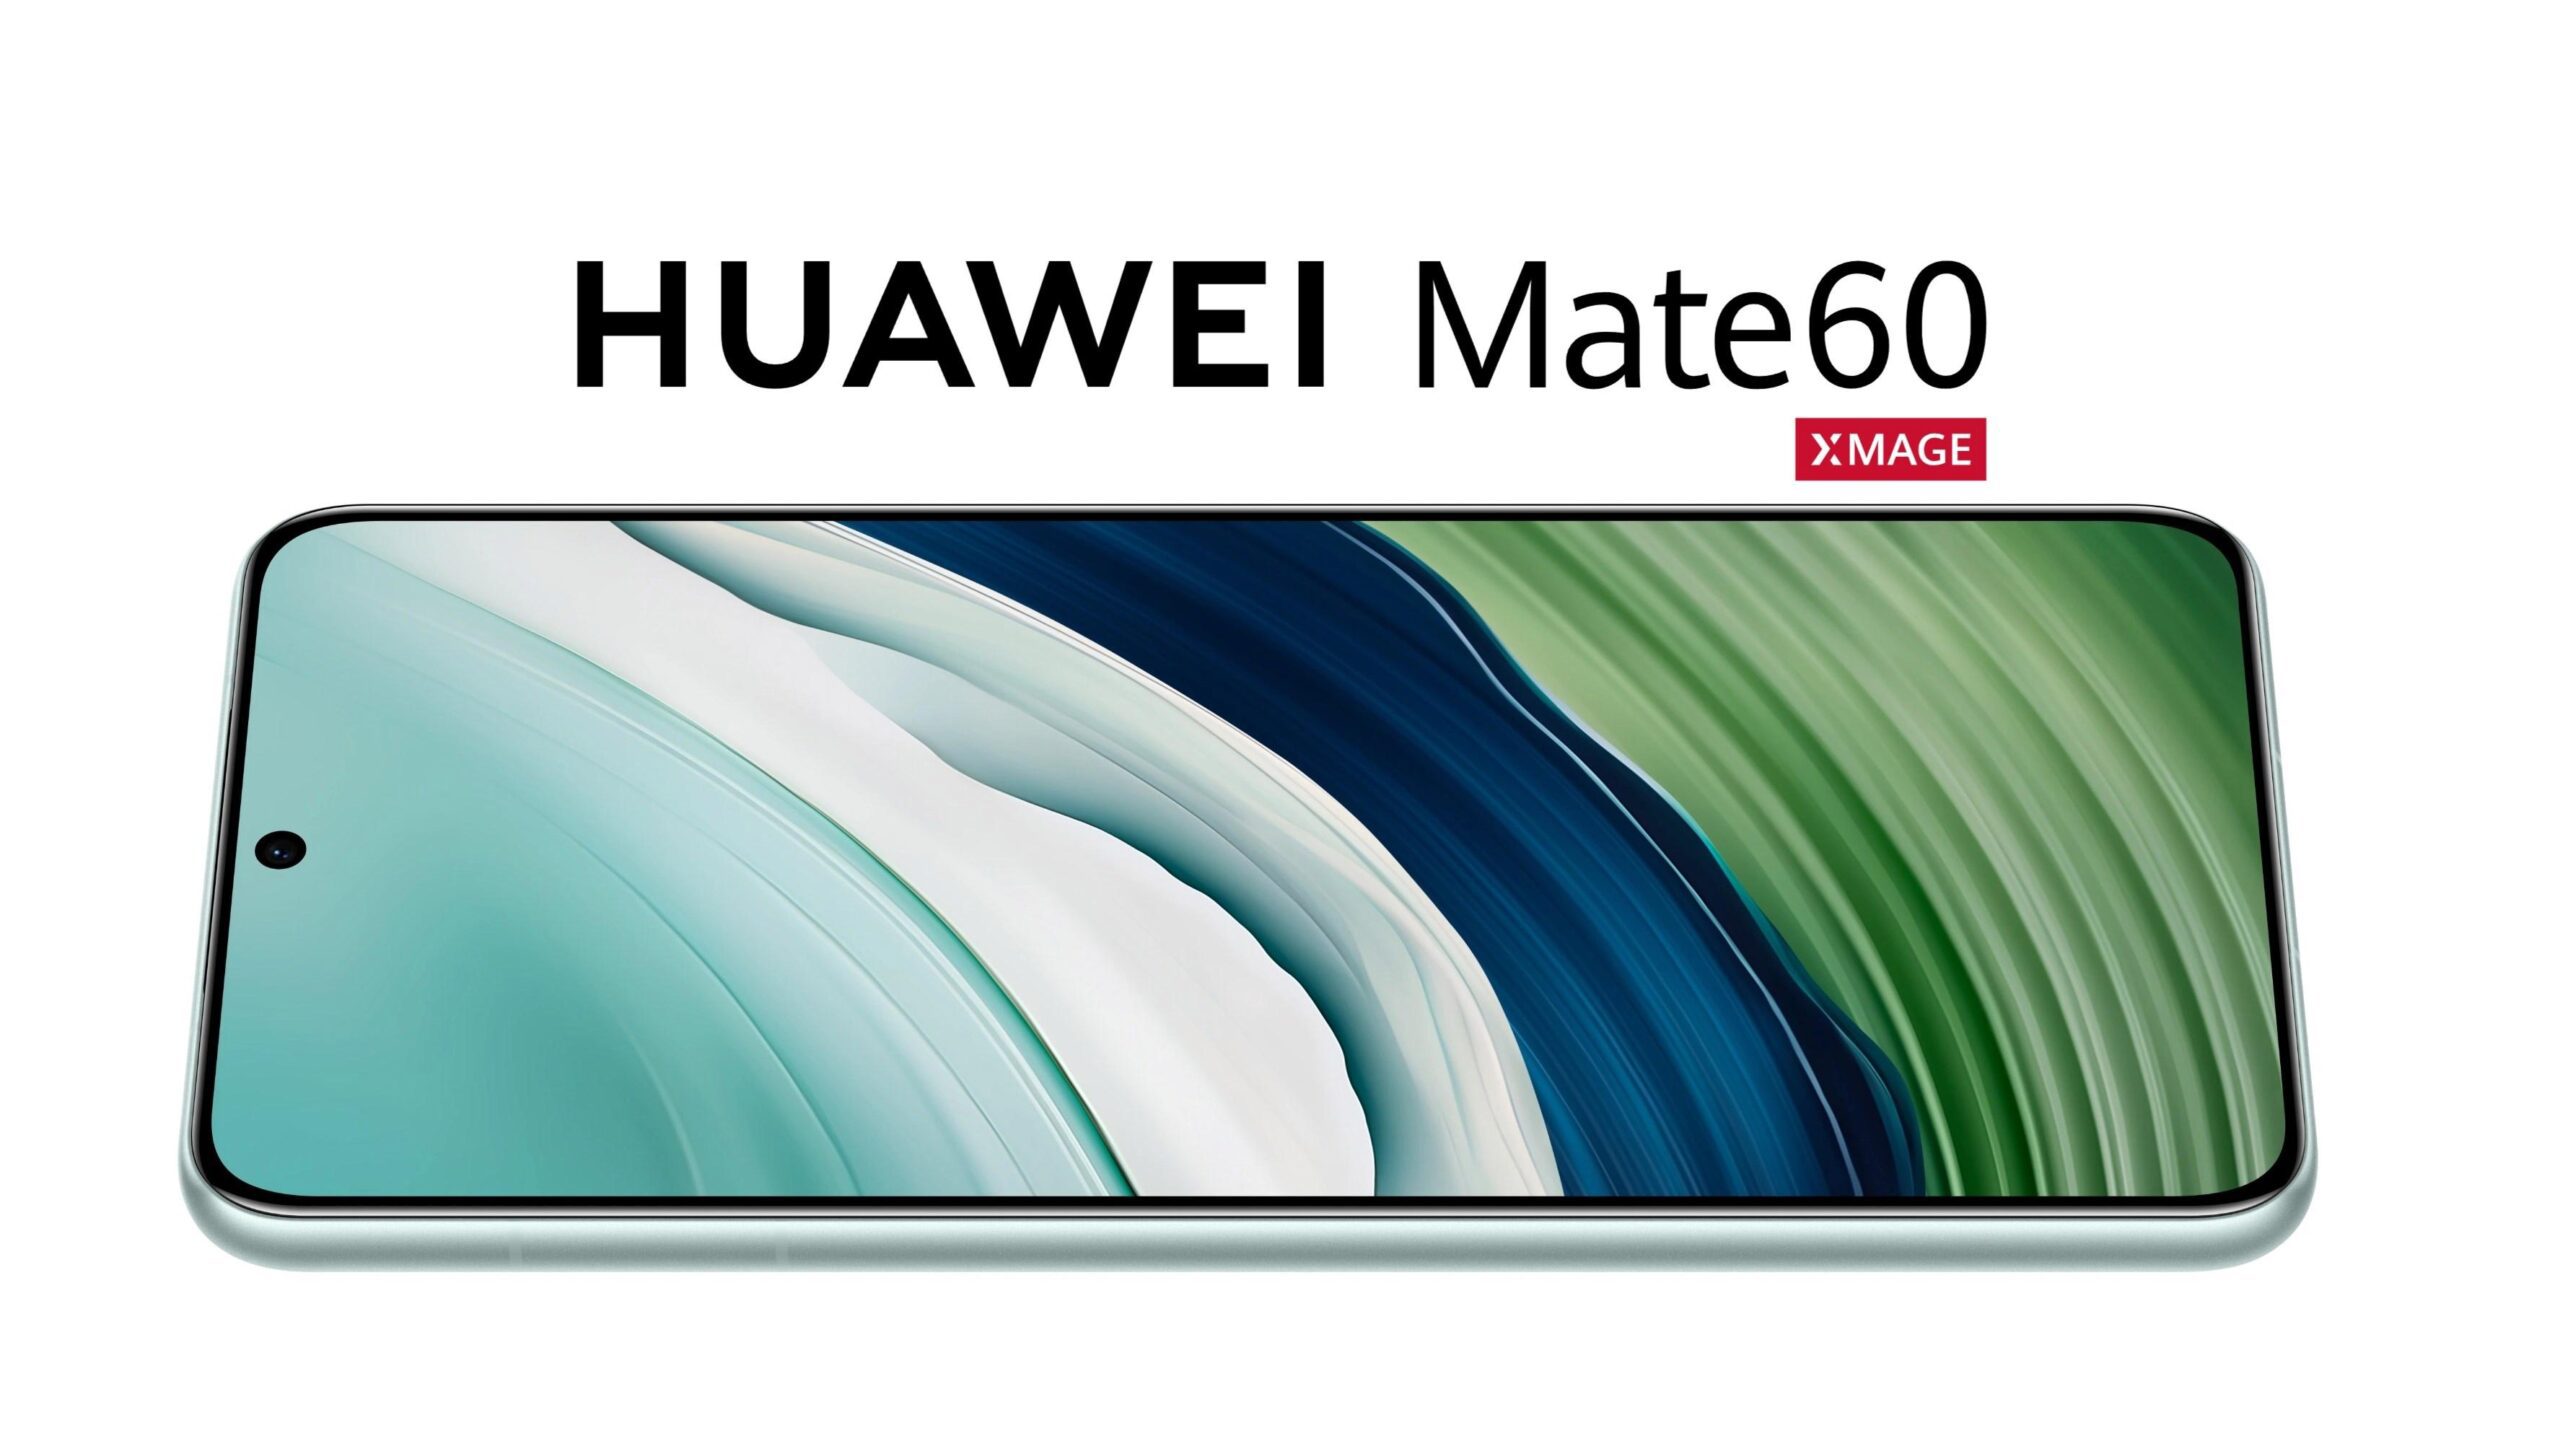 Huawei Mate 60 tanıtıldı: 120Hz ekran, 50MP kamera, 66W hızlı şarj ve dahası